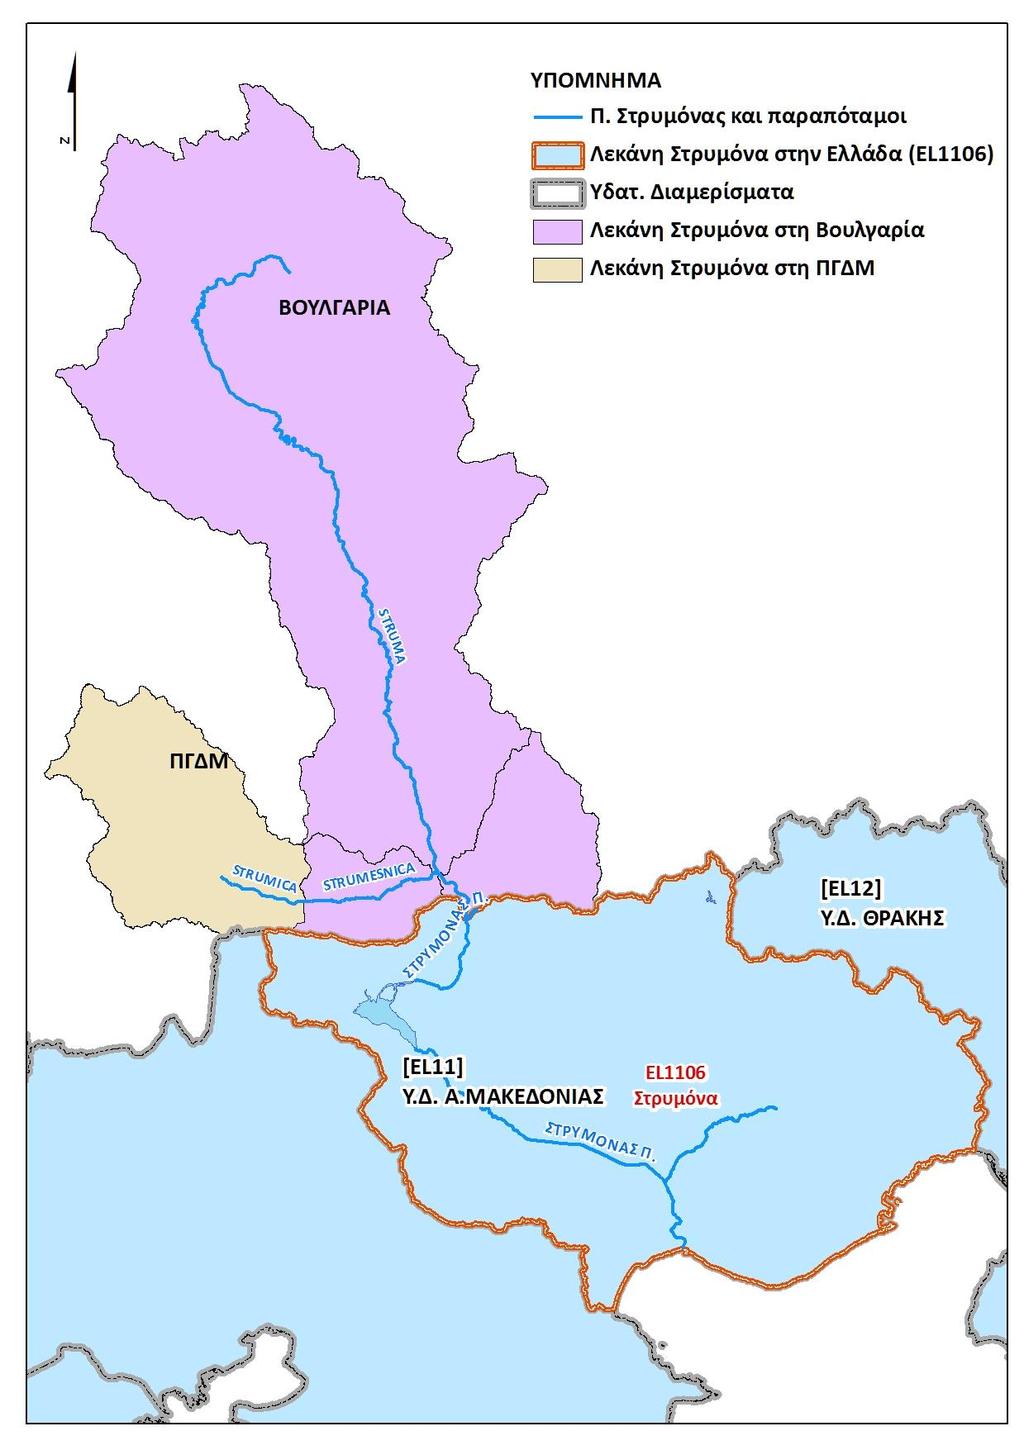 Η συνολική λεκάνη απορροής του καλύπτει περίπου 17.730 km², από τα οποία τα 8.870 km² βρίσκονται στη Βουλγαρία (51,3%), 2.465 km² (14,1%) στο FYROM και τα υπόλοιπα 6.